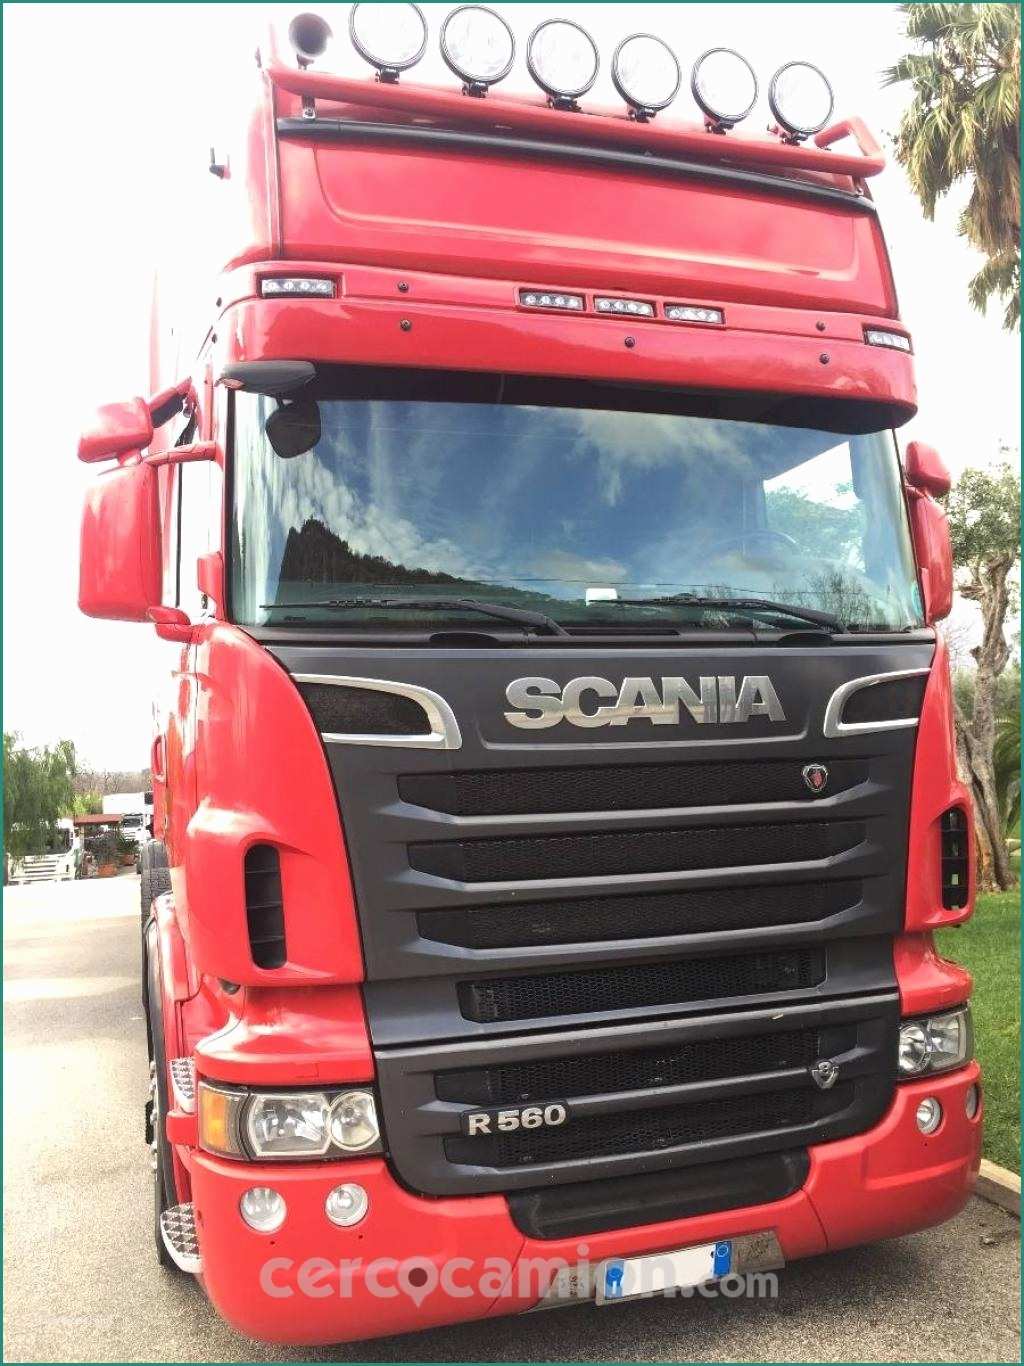 Scania R Usato E Scania R 560 Usato Telaio Na Campania Dettagli Offerta